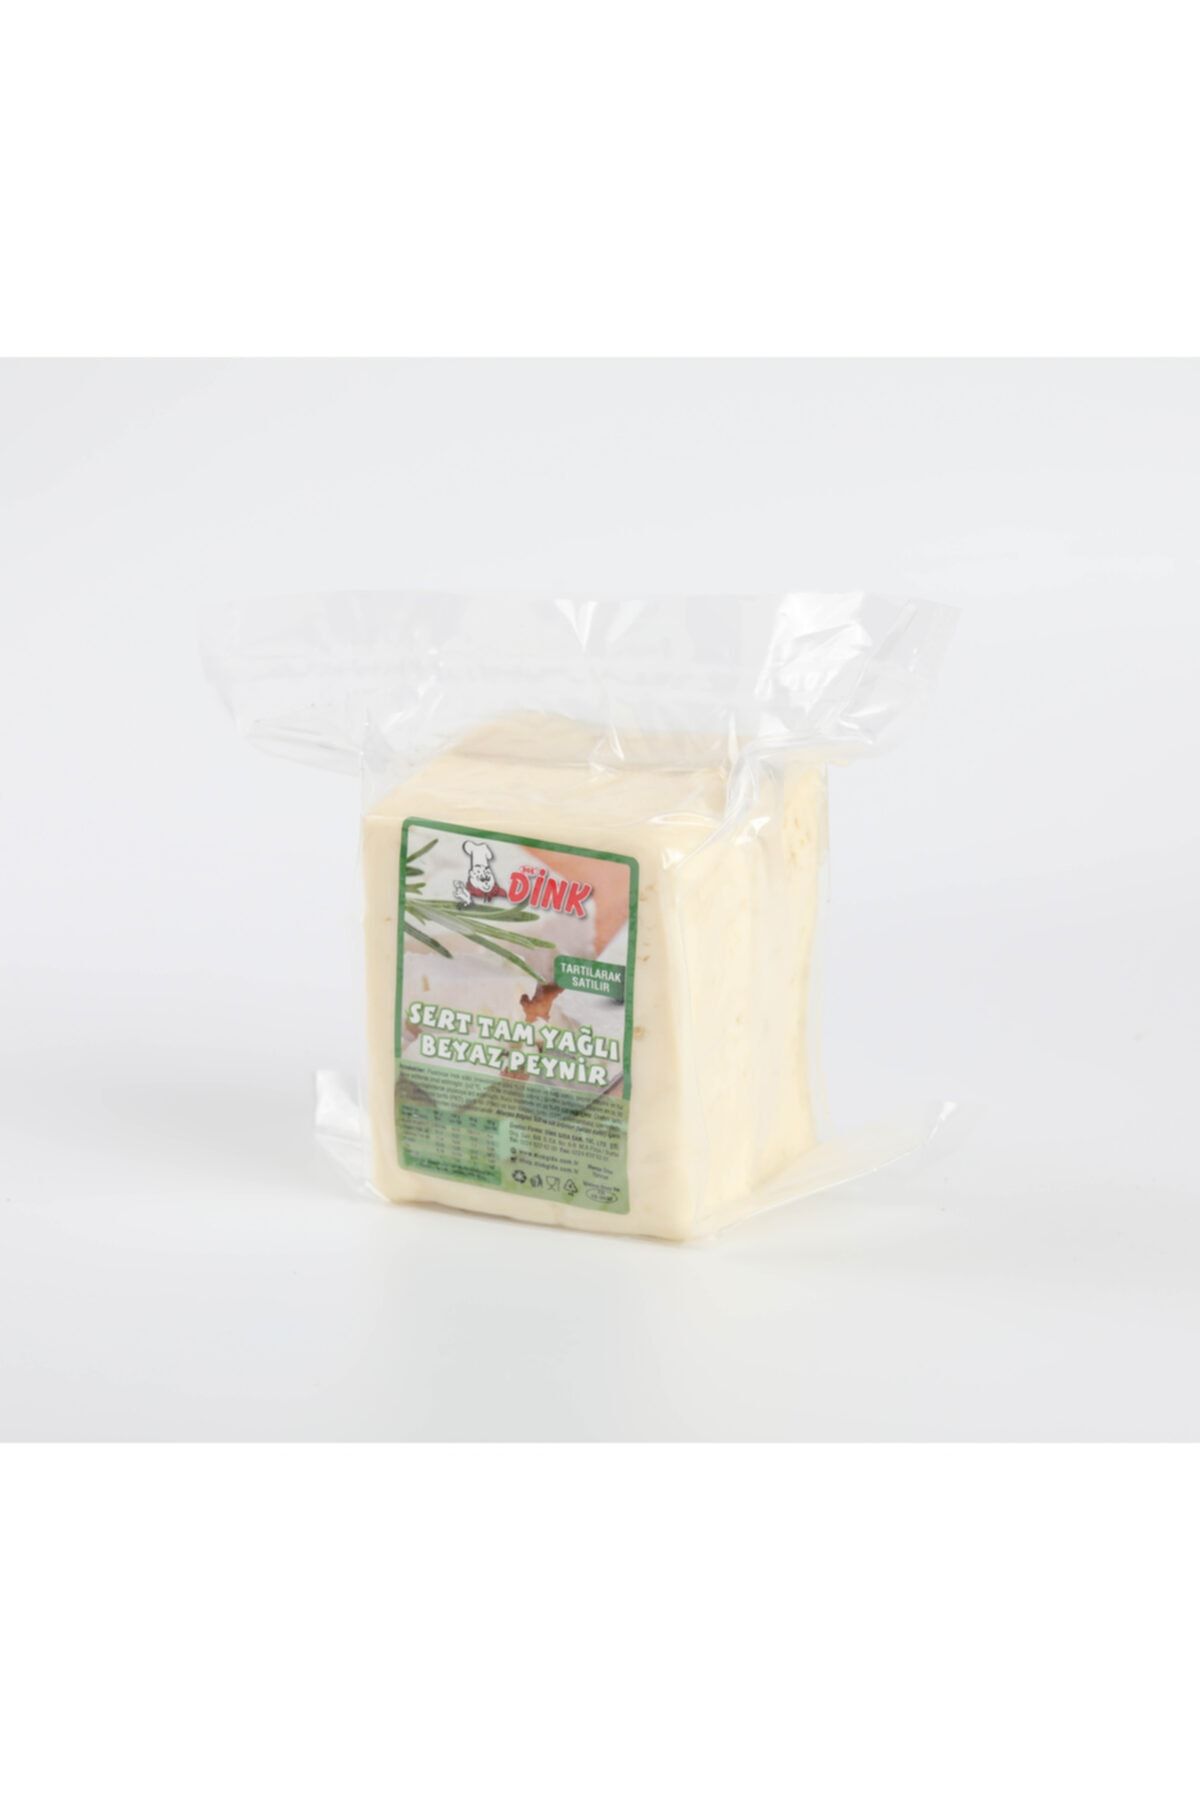 DİNK GIDA Tam Yağlı Klasik Olgunlaştırılmış Sert (EZİNE TİPİ) Beyaz Peynir 500g. - Şirden Mayalı